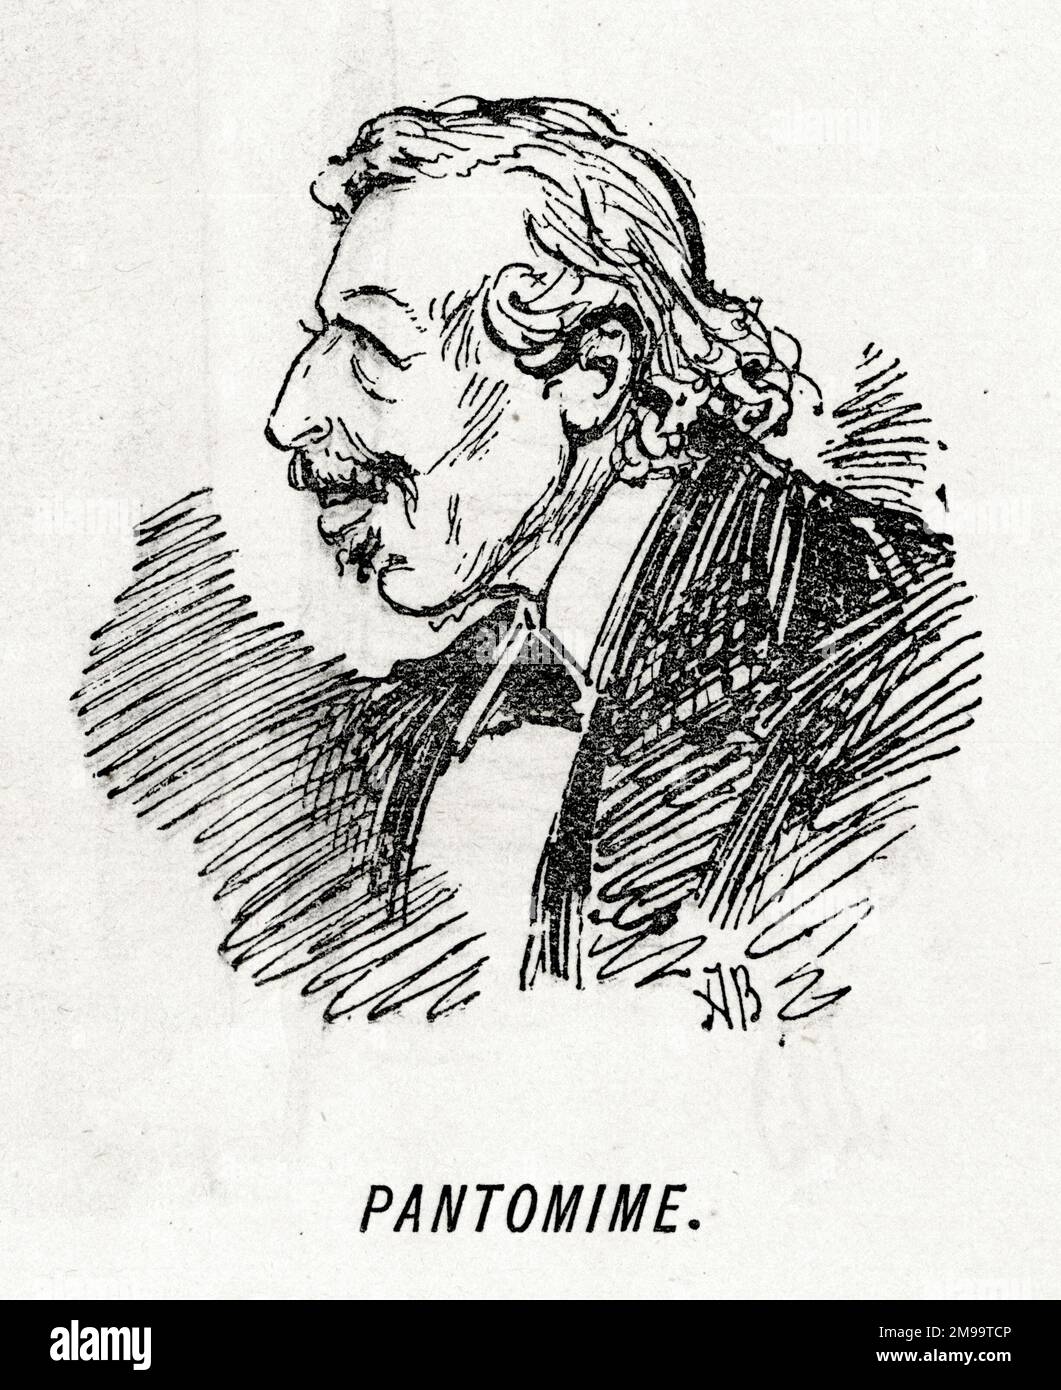 Ritratto di Cartoon, Pantomime - Edward Litt Laman Blanchard (1820-1889), scrittore inglese, drammaturgo e critico drammatico, meglio conosciuto per i suoi pantomimes Drury Lane. Foto Stock